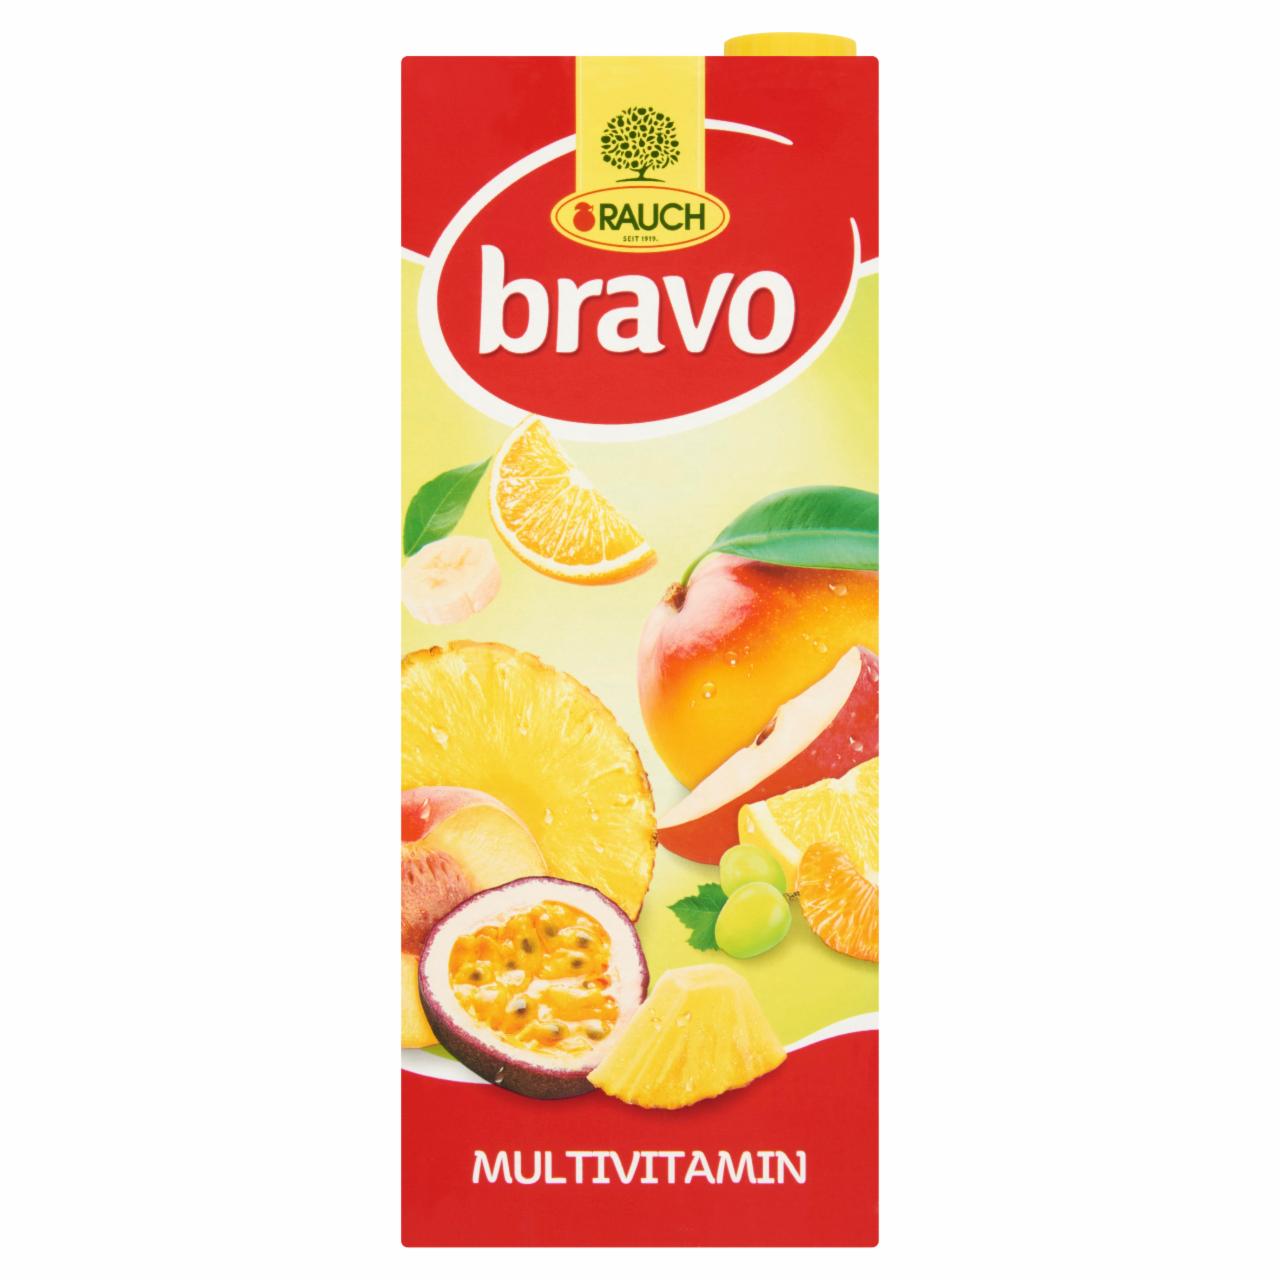 Képek - Rauch Bravo Multivitamin vegyes gyümölcsital édesítőszerekkel és 7 vitaminnal 1,5 l